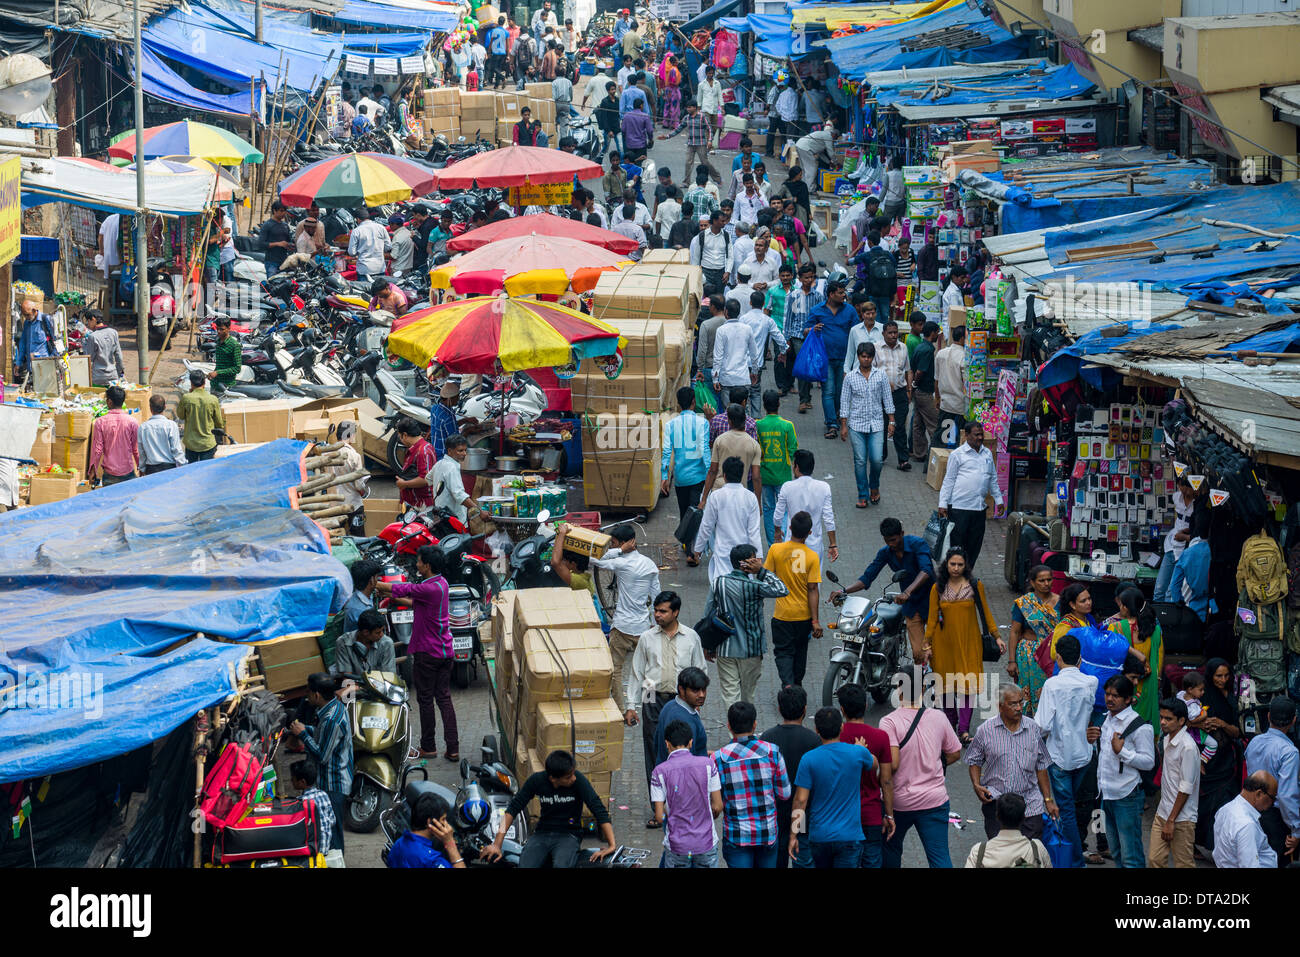 Crowded street with shops at Mangaldas Market, Mumbai, Maharashtra, India Stock Photo